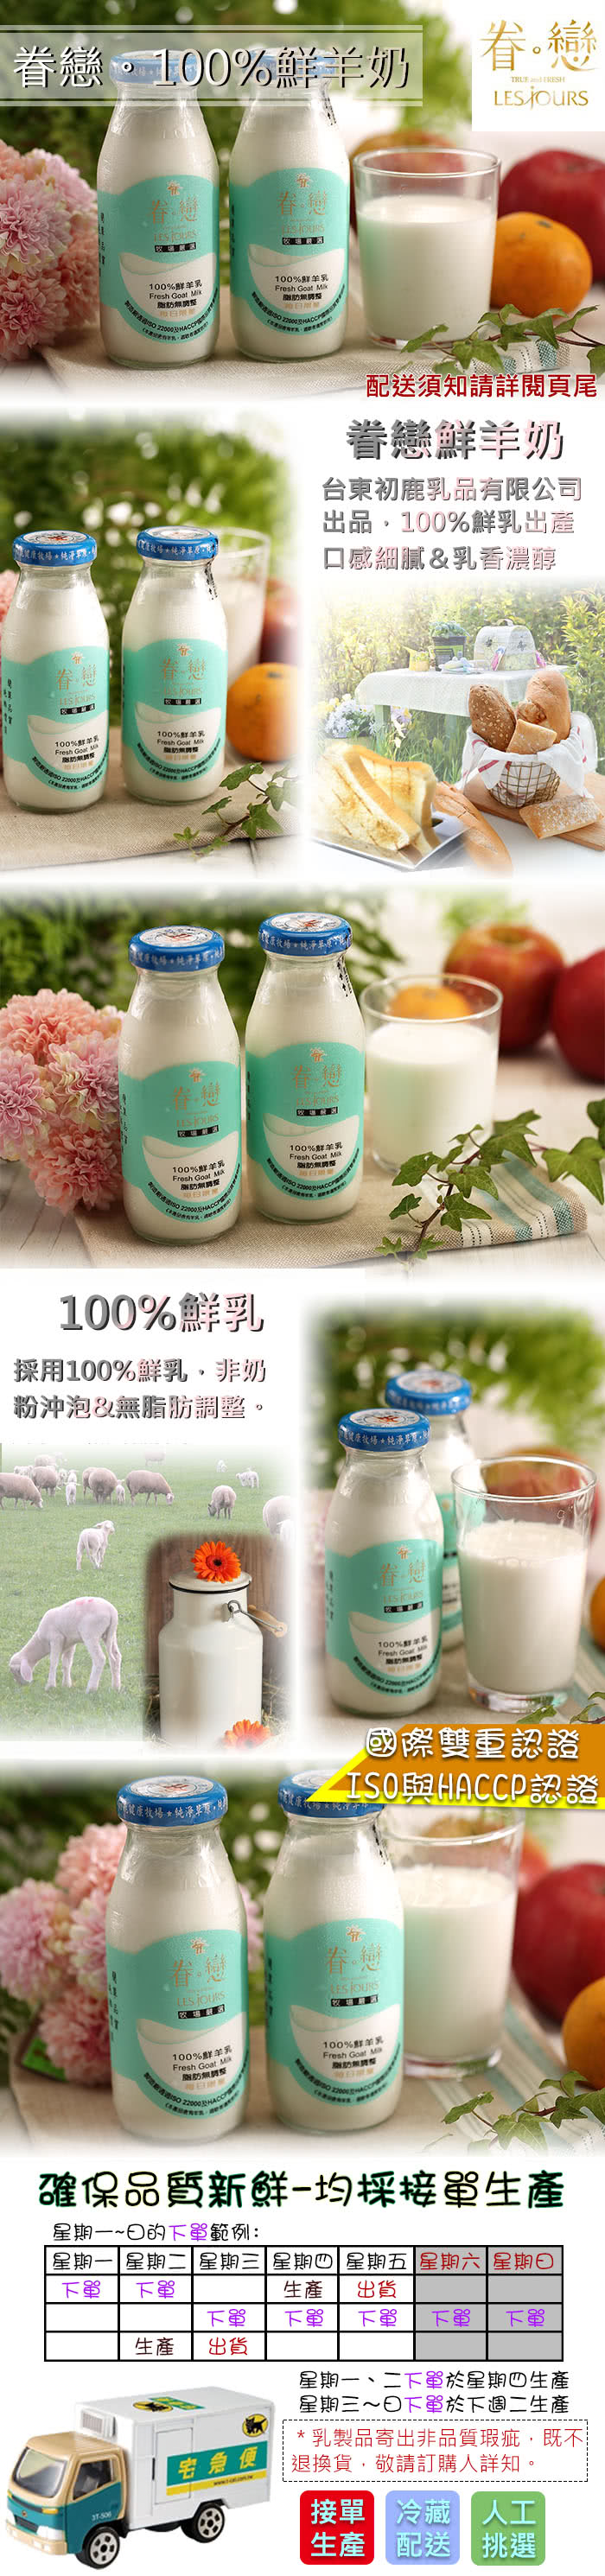 【眷戀】100%鮮奶12瓶(200ml/瓶)